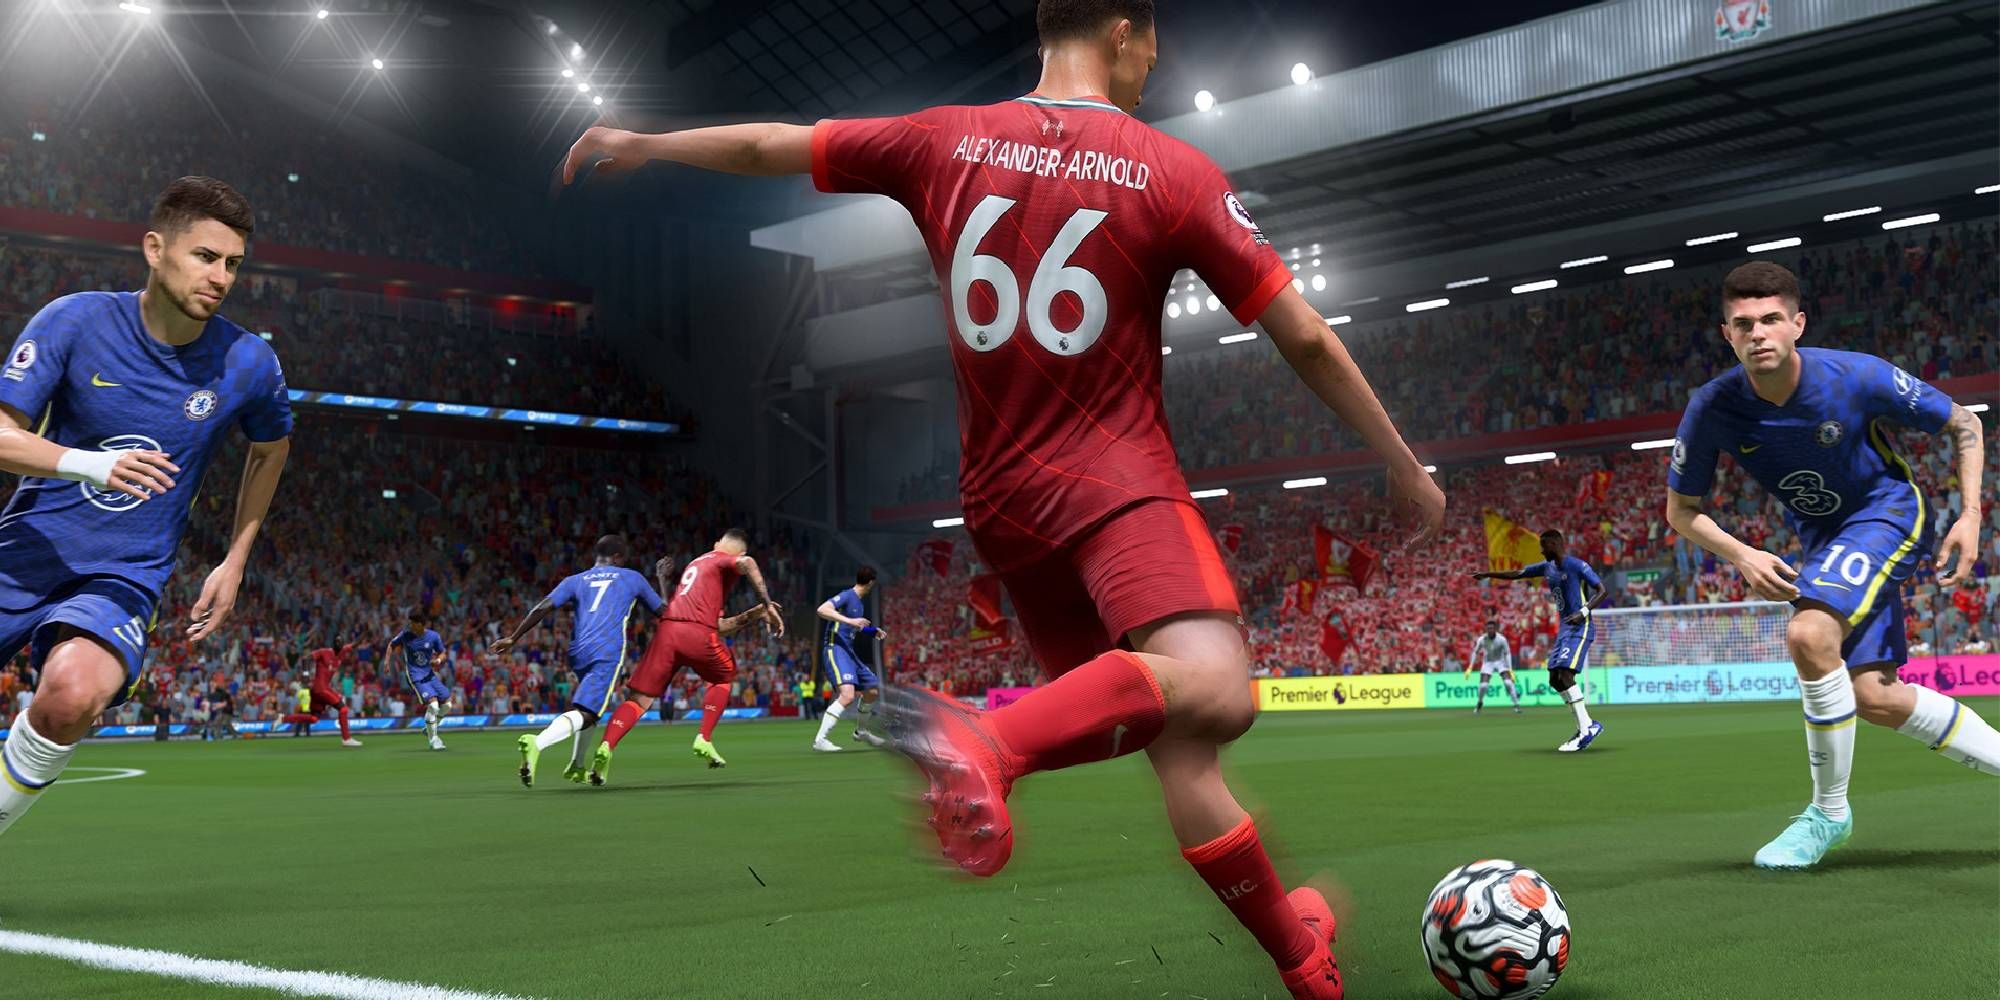 Jogador número 66 do FIFA 23 arremessando contra dois atletas de uniforme azul perto do canto do campo